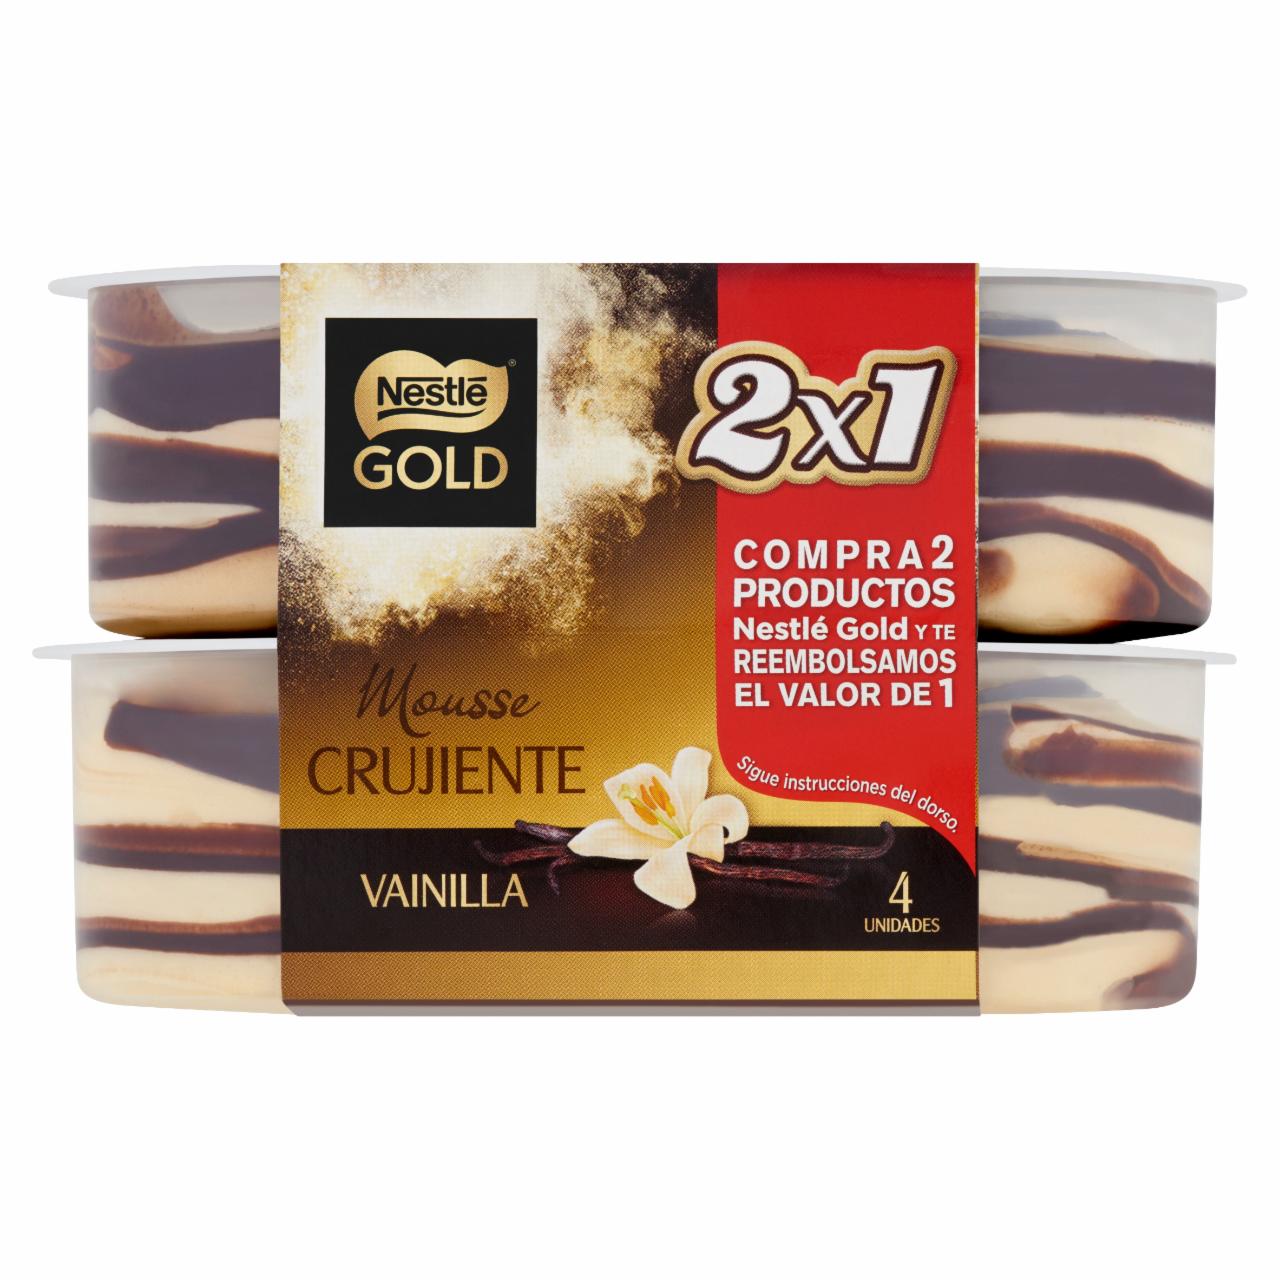 Képek - Nestlé Gold vaníliás tejhab kakaós réteggel cukorral és édesítőszerekkel 4 x 57 g